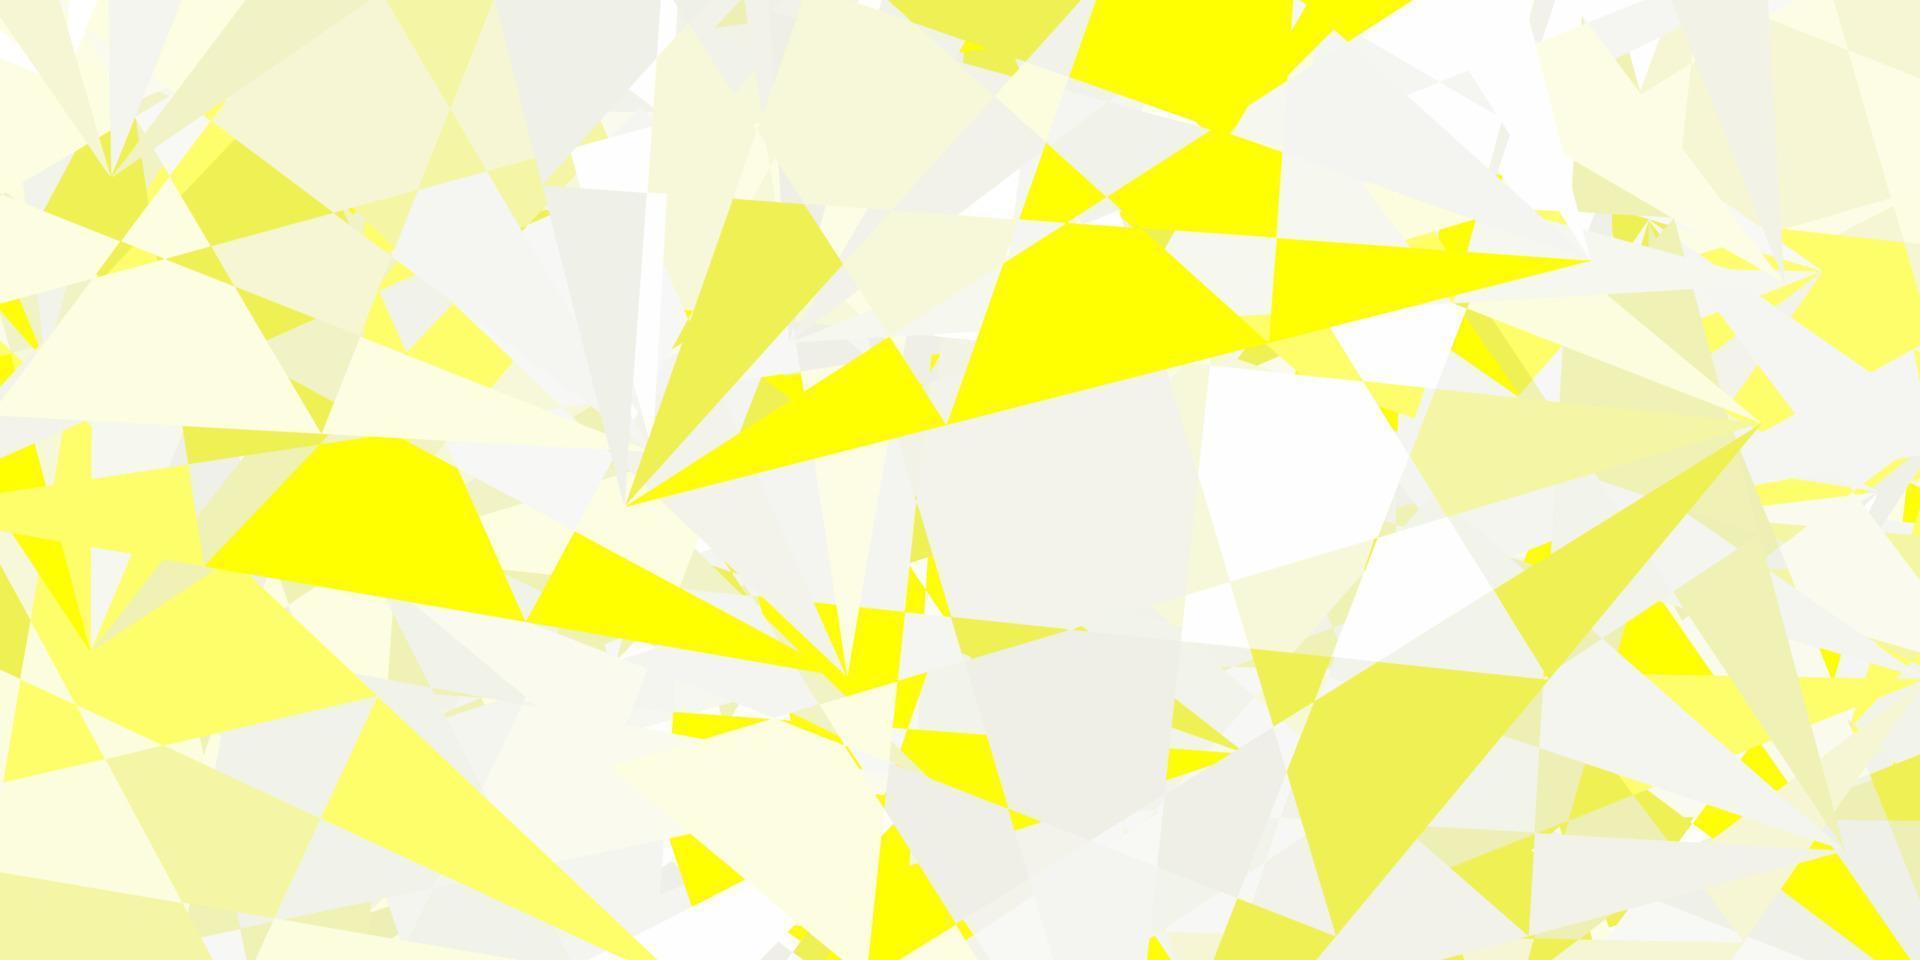 ljus gul vektor bakgrund med trianglar.